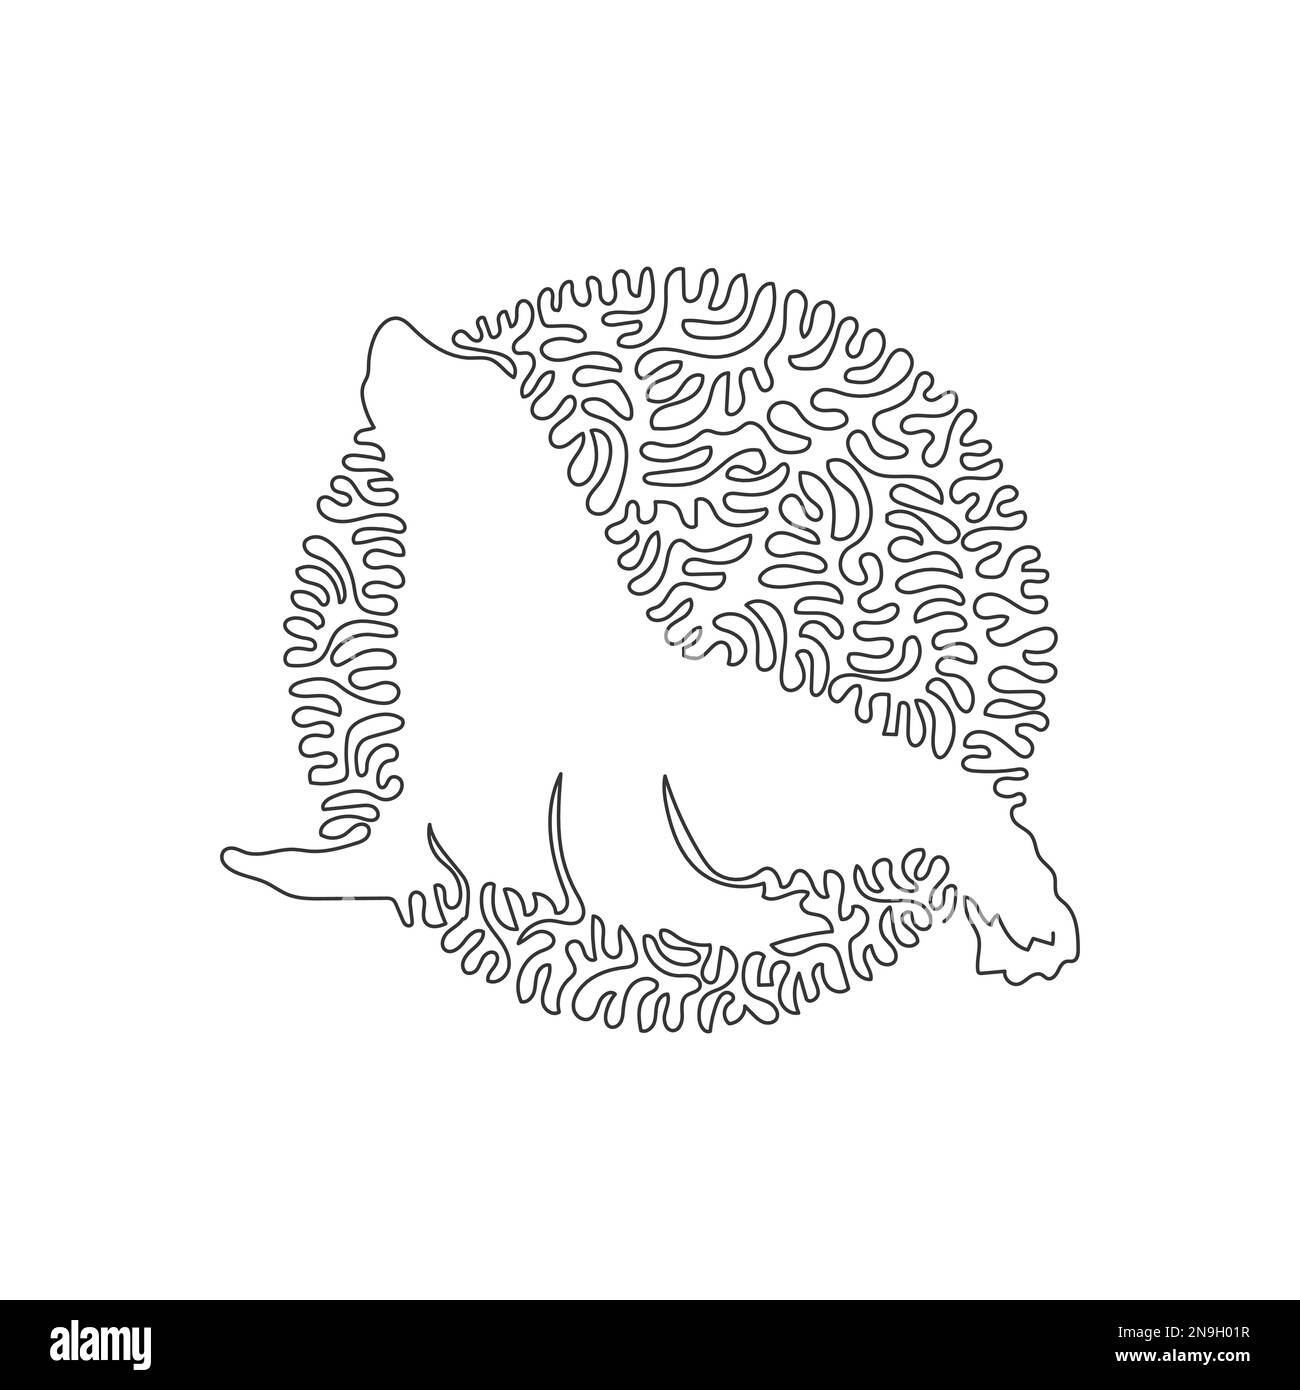 Einfache, geschwungene, einzeilige Zeichnung eines Flügelfuß-Seelöwen. Durchgehende Linienzeichnung grafischer Designvektor die Illustration des Seelöwen ist ein Marine Stock Vektor